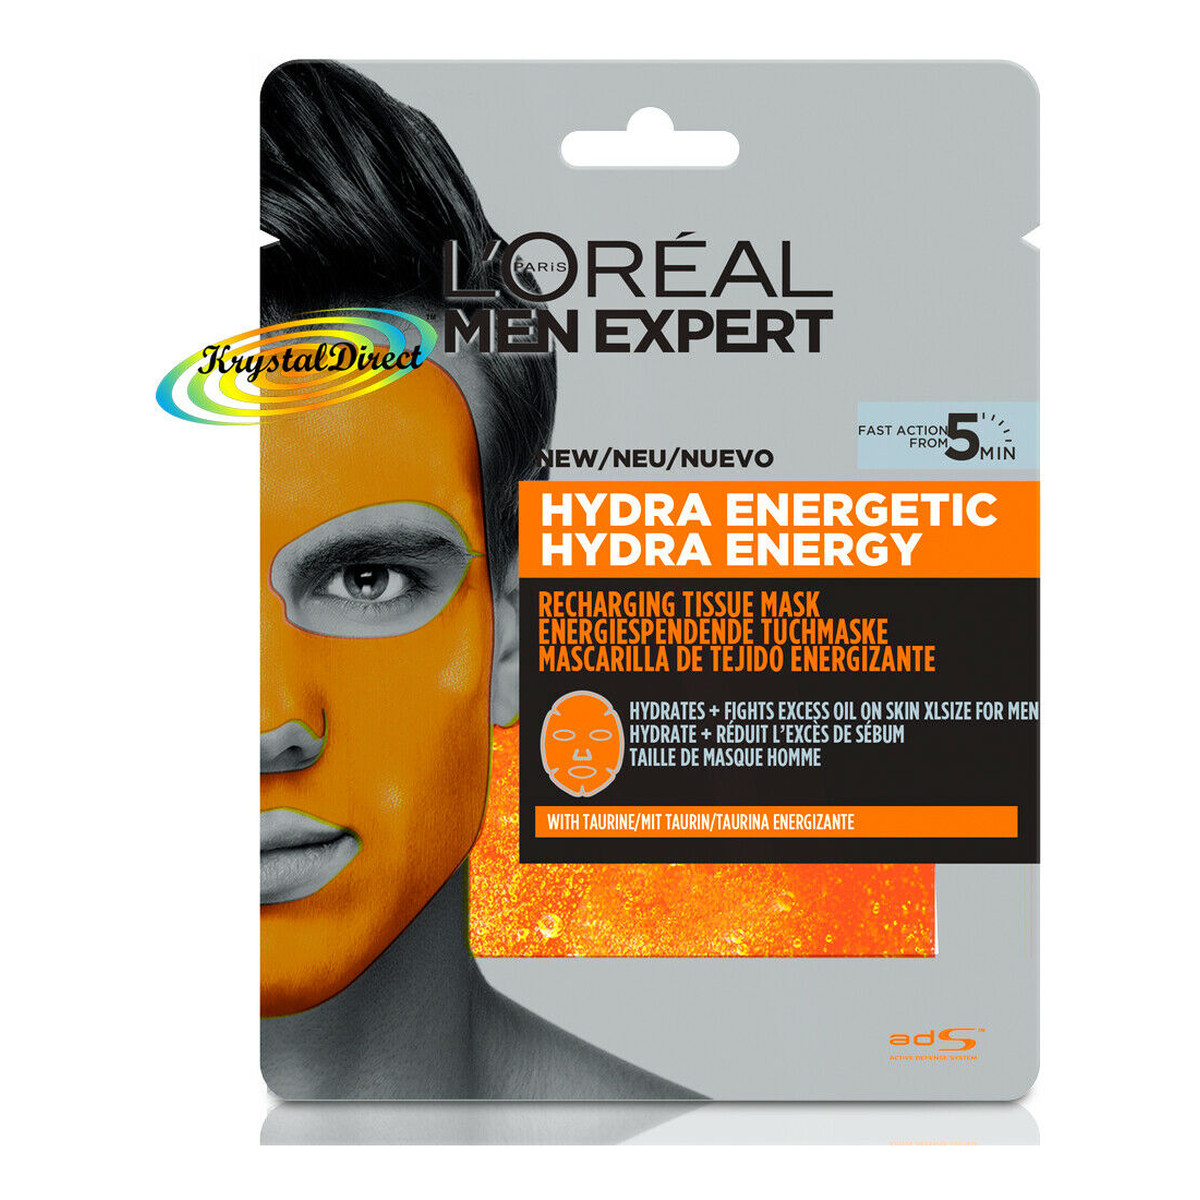 L'Oreal Paris Men Expert Hydra Energetic Energetyzująca Maska w płachcie 1szt 30g